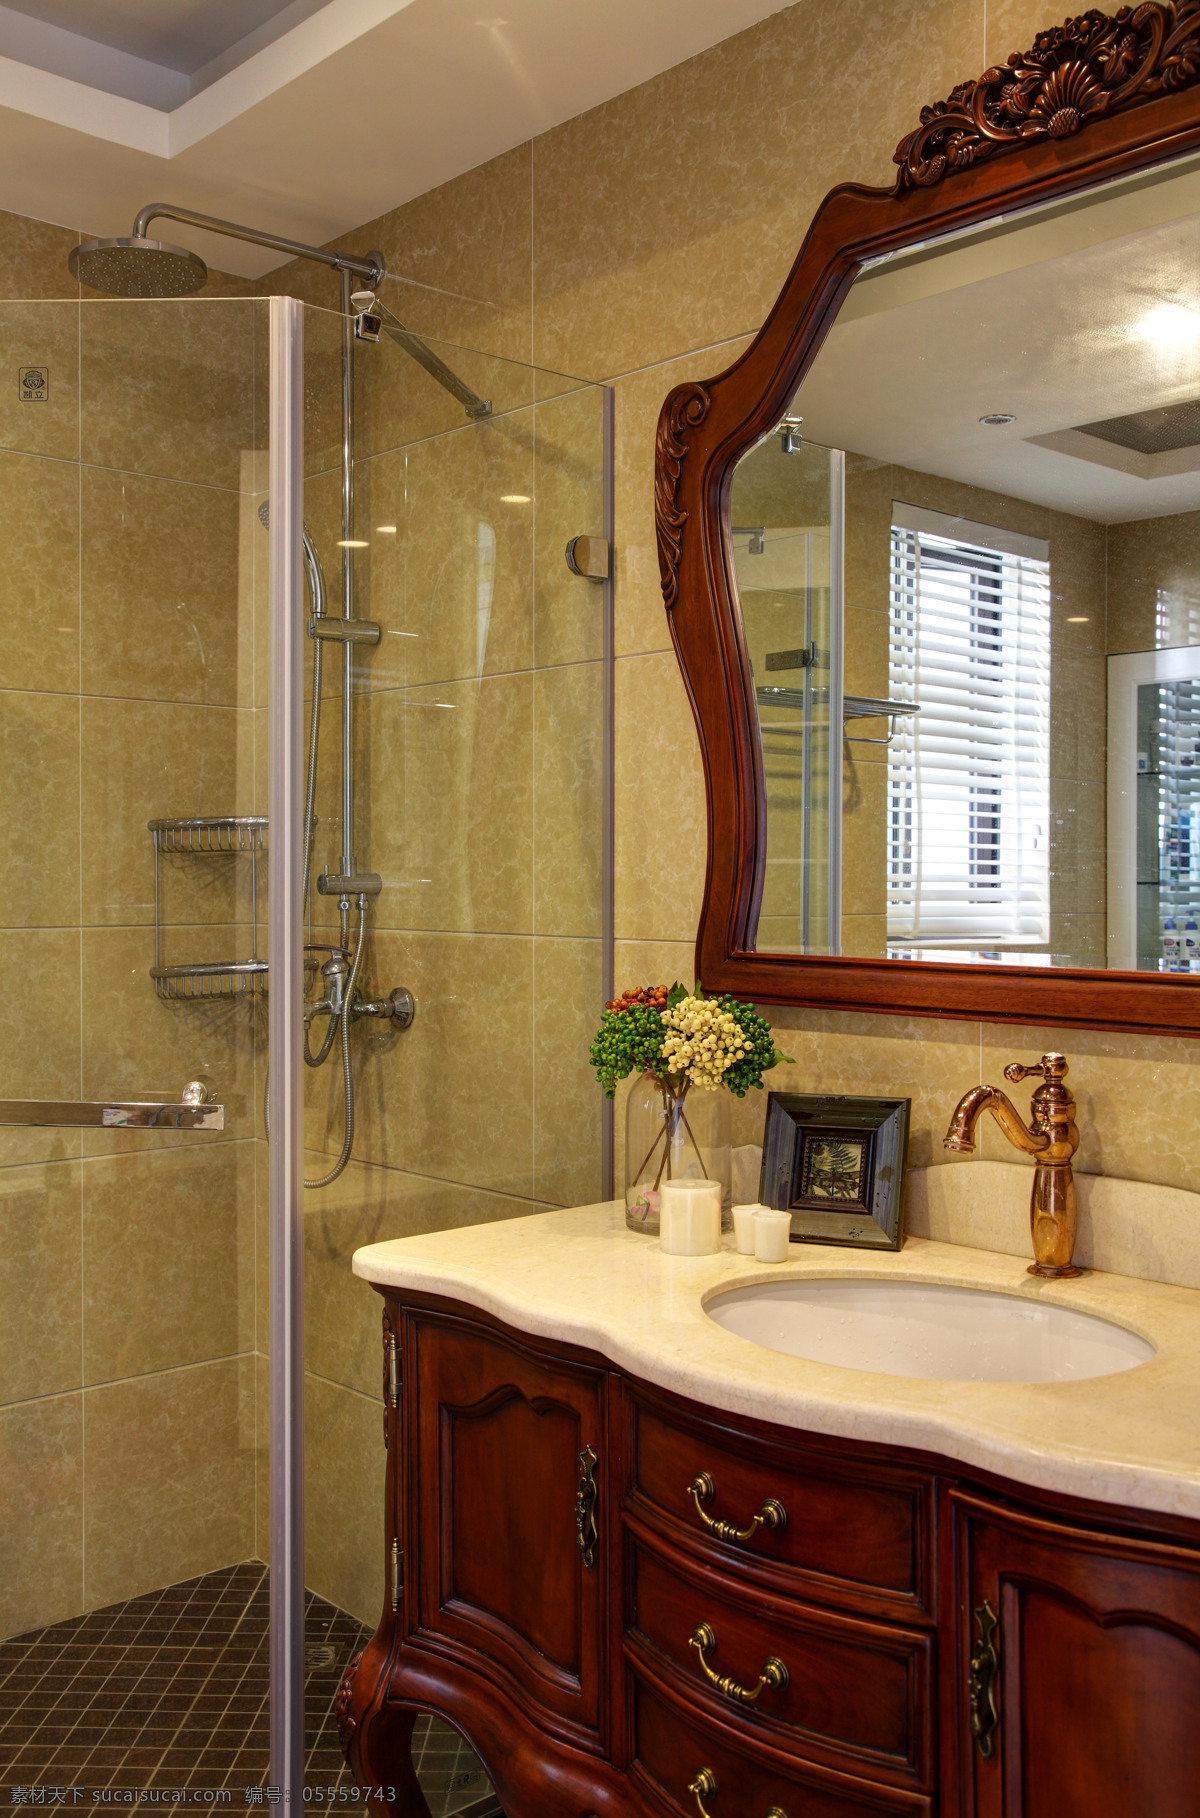 中式 典雅 卫生间 木制 边框 镜子 室内装修 效果图 瓷砖洗手台 卫生间装修 木制柜子 玻璃门